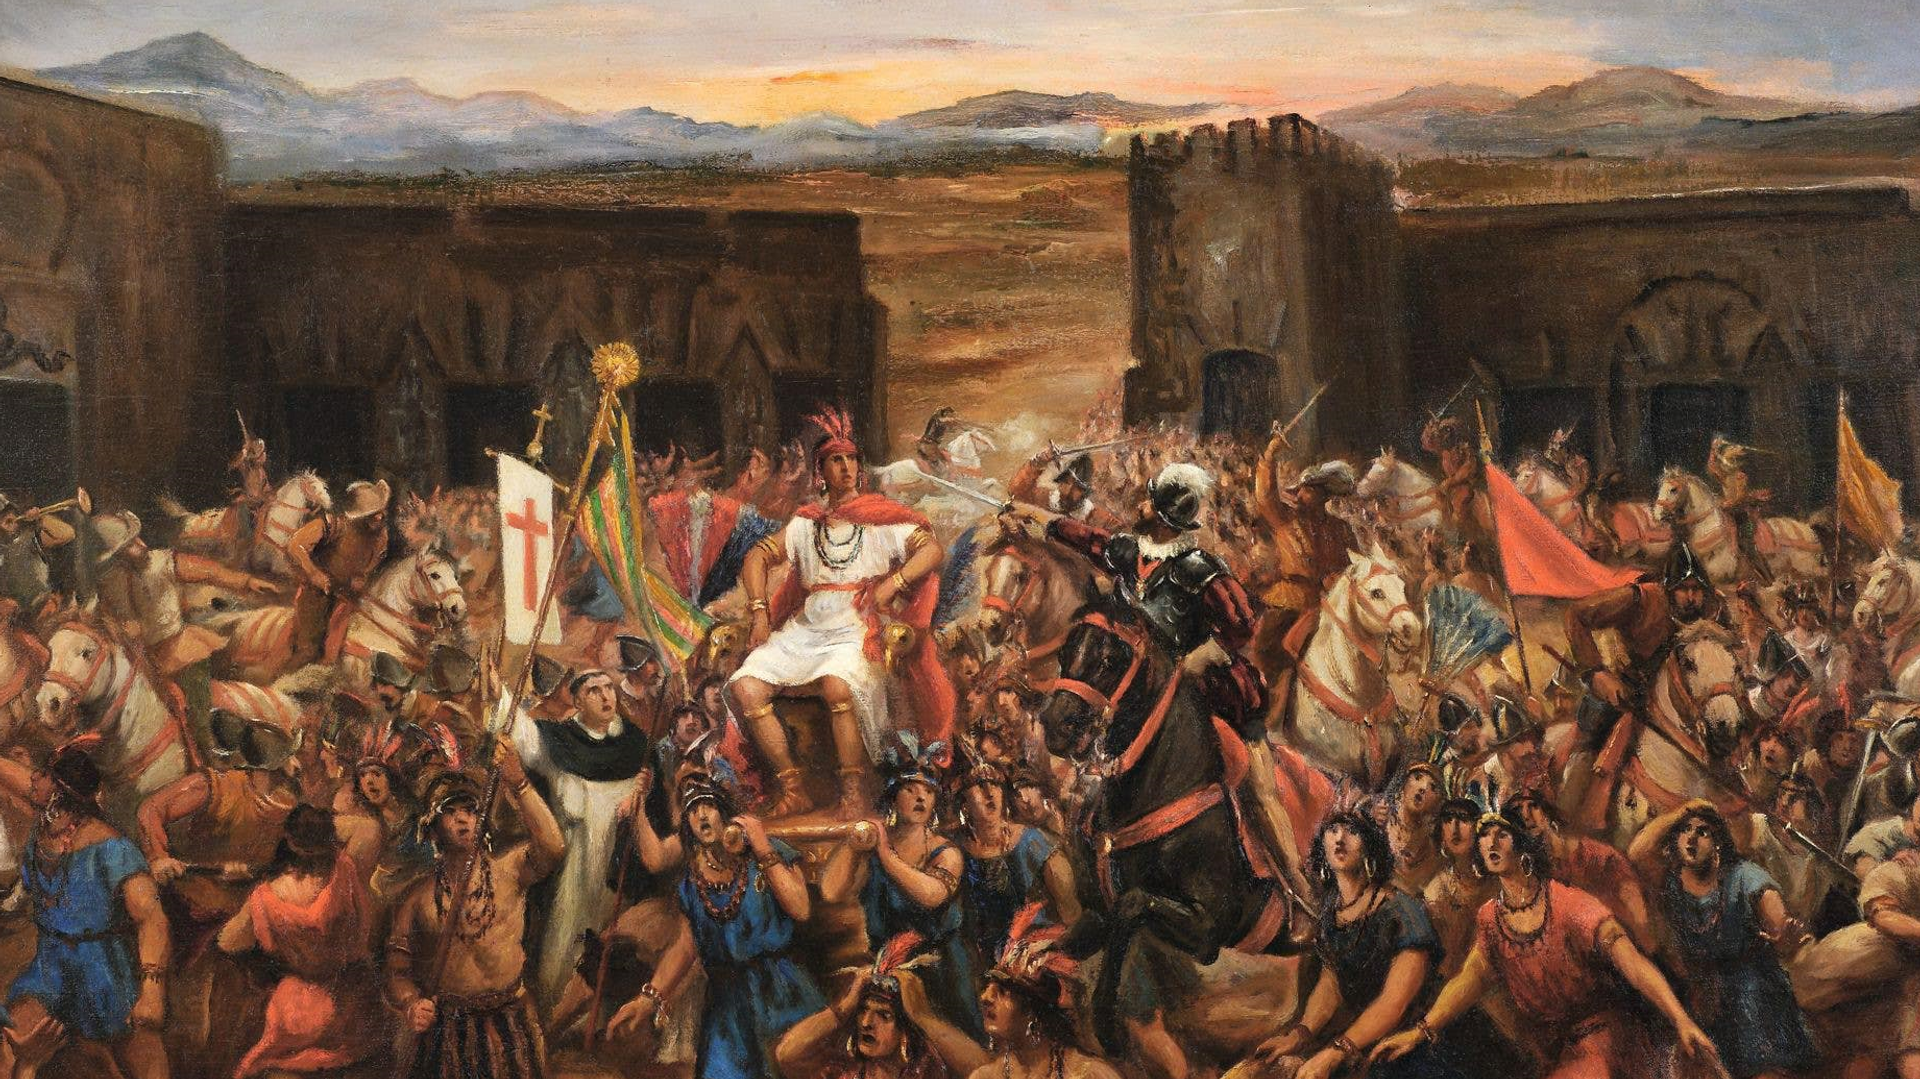  La cita trágica que llevó a la captura de Atahualpa y la caída de los incas